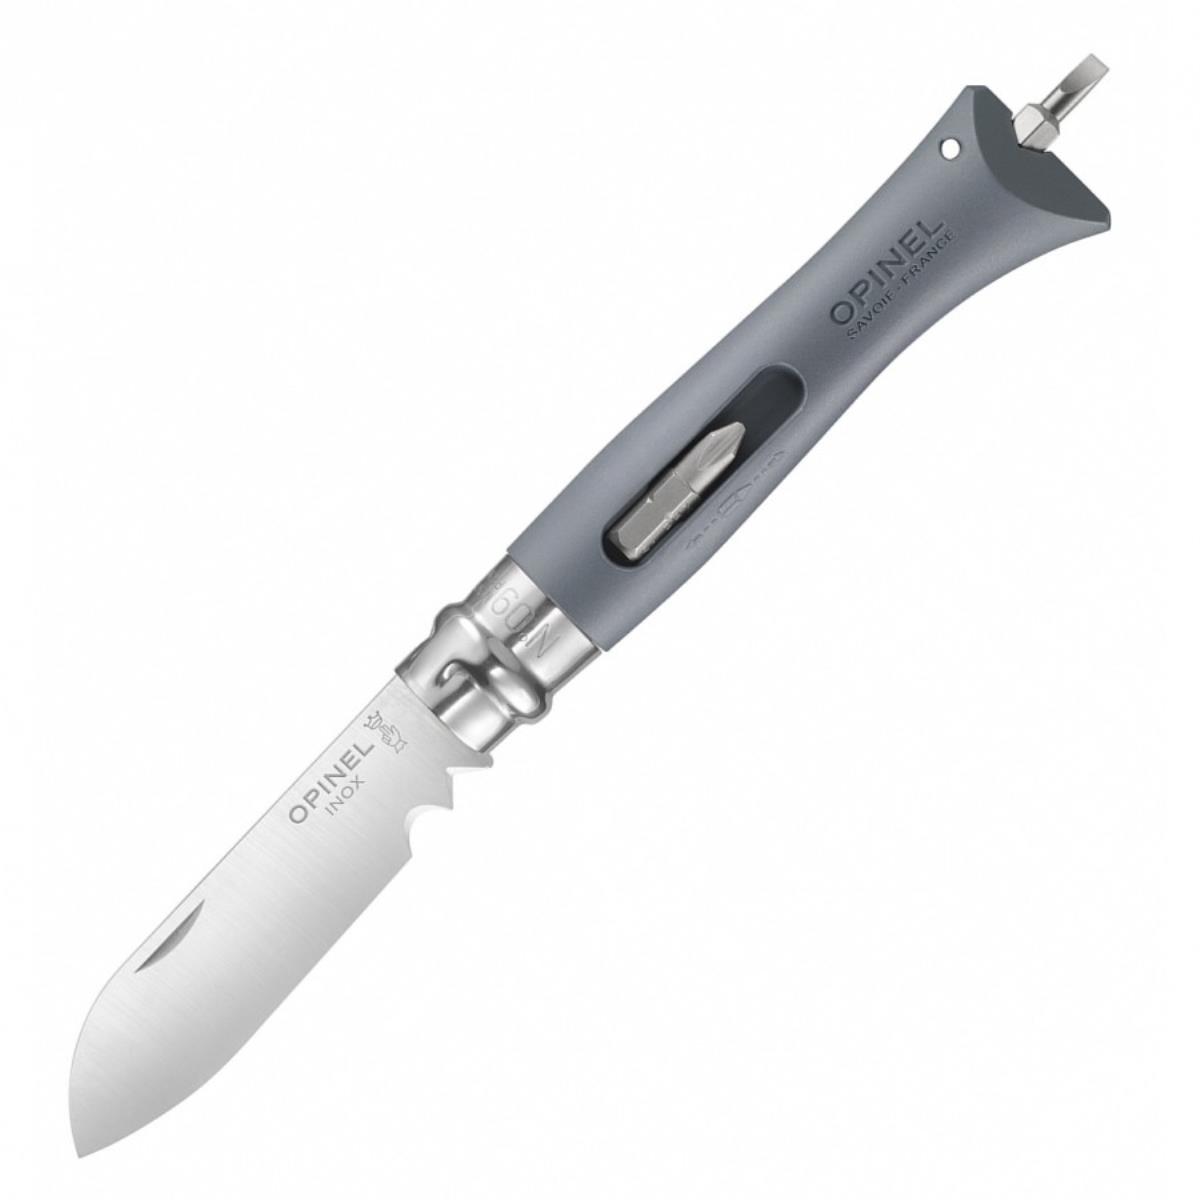 Нож №9 VRI  DIY Grey (нержавеющая сталь, рукоять пластик, длина клинка 8 см) 0017926 OPINEL набор украшений пластик 10 шт